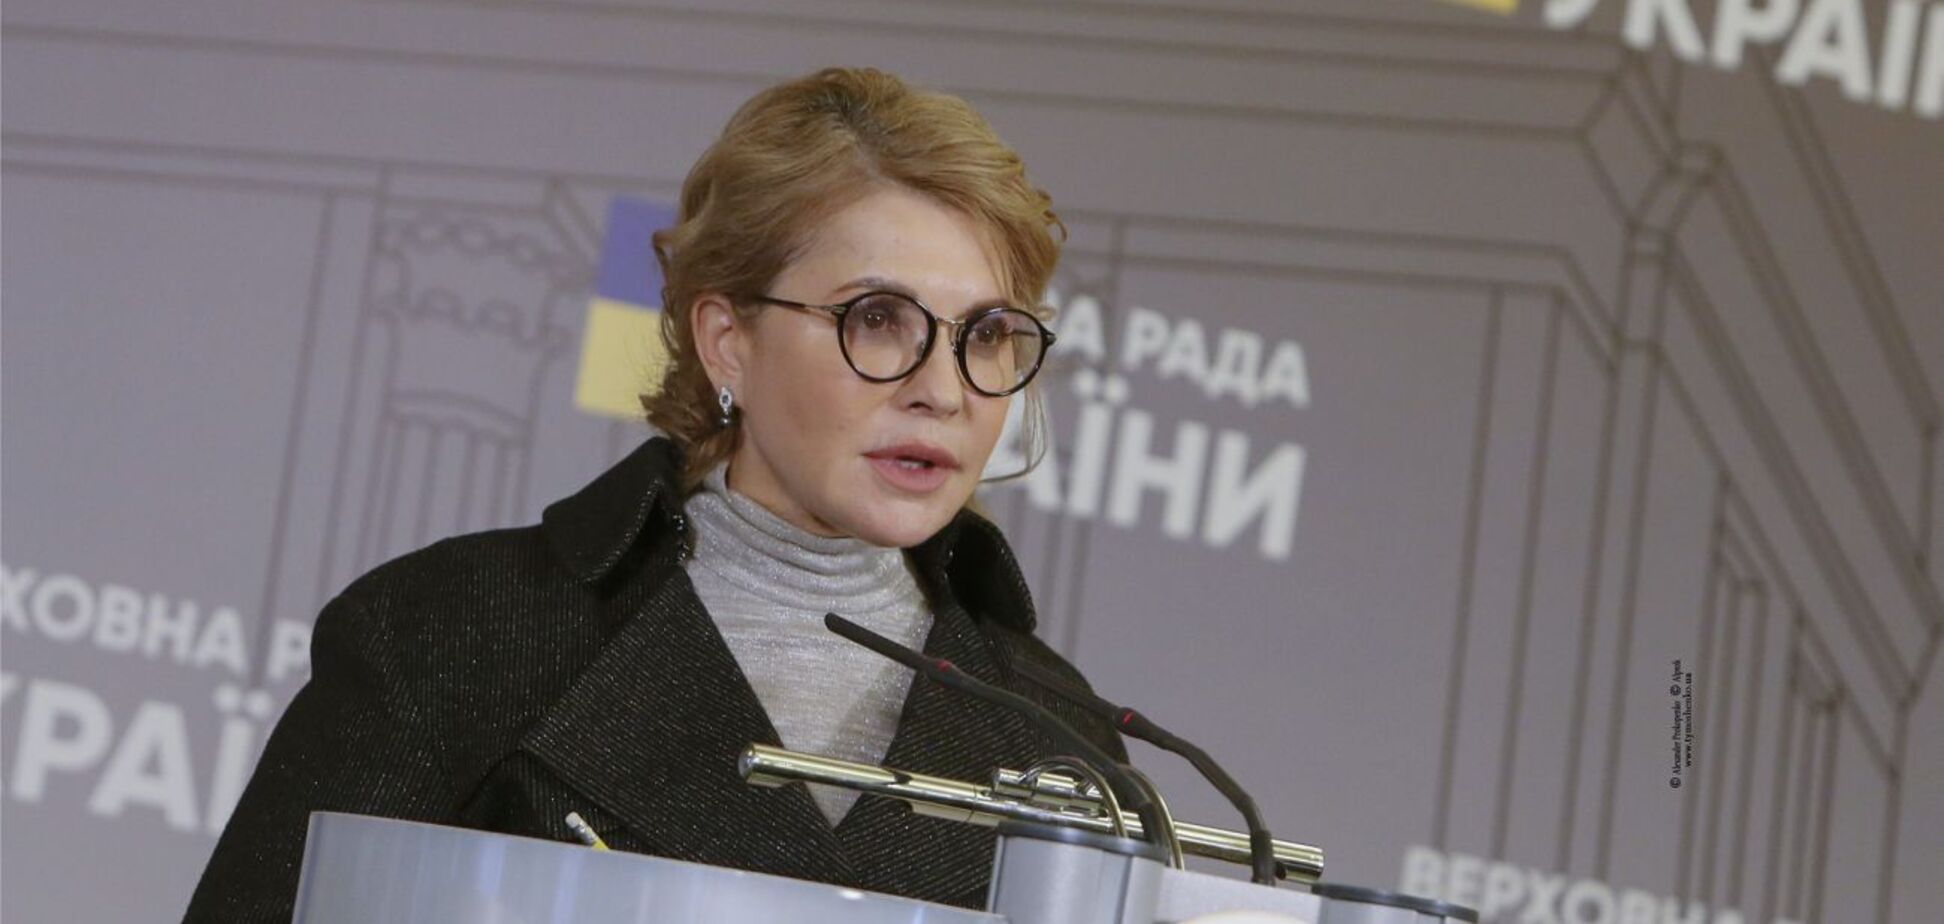 Результаты выборов показали, что 'Батьківщина' является альтернативой действующей власти, – Тимошенко